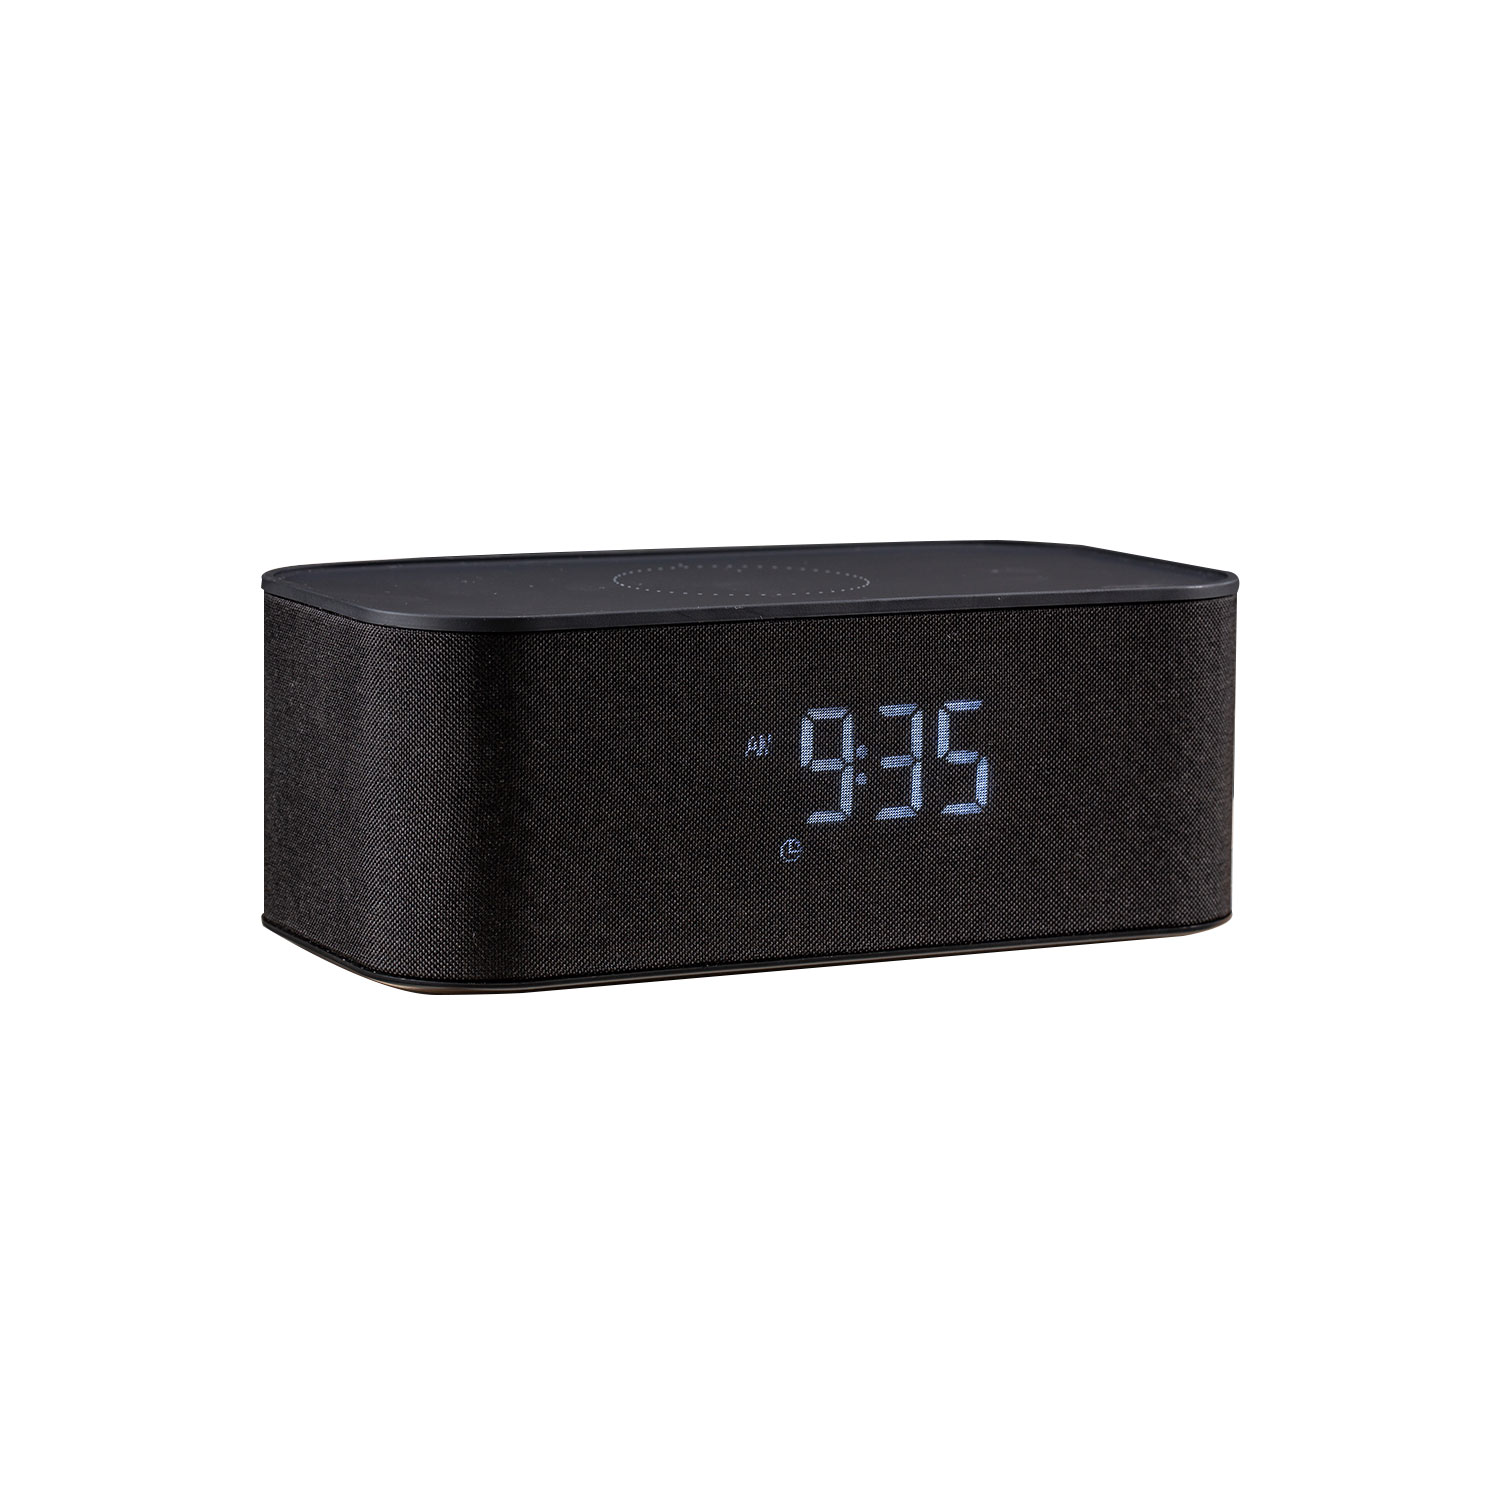 Alto-falante Bluetooth do relógio com carregador sem fio NSP-0260